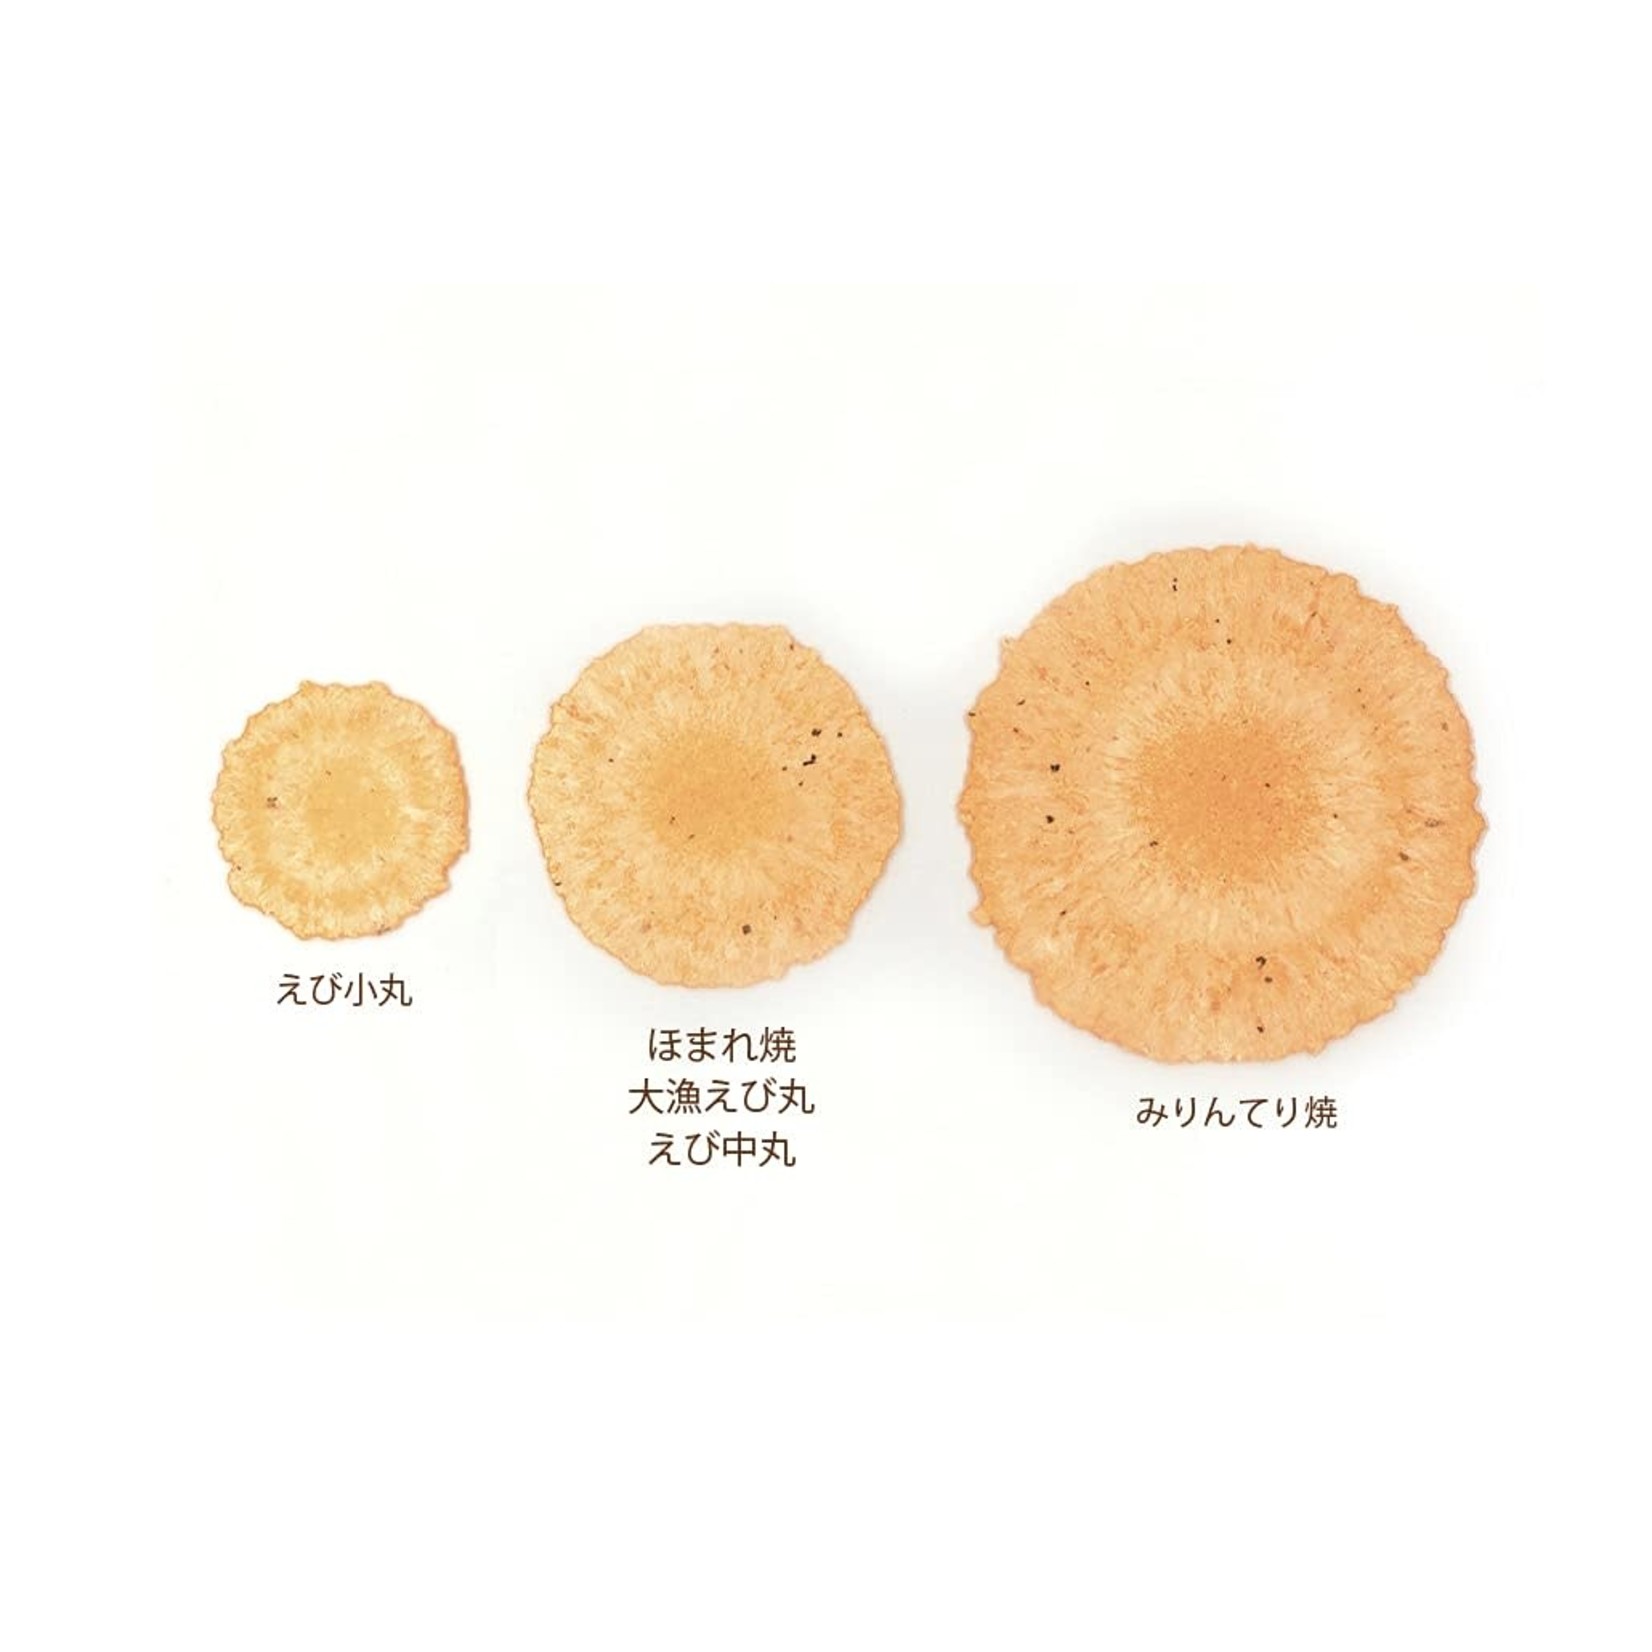 Negita Cracker - Shrimp (Ebi komaru) 2.11oz